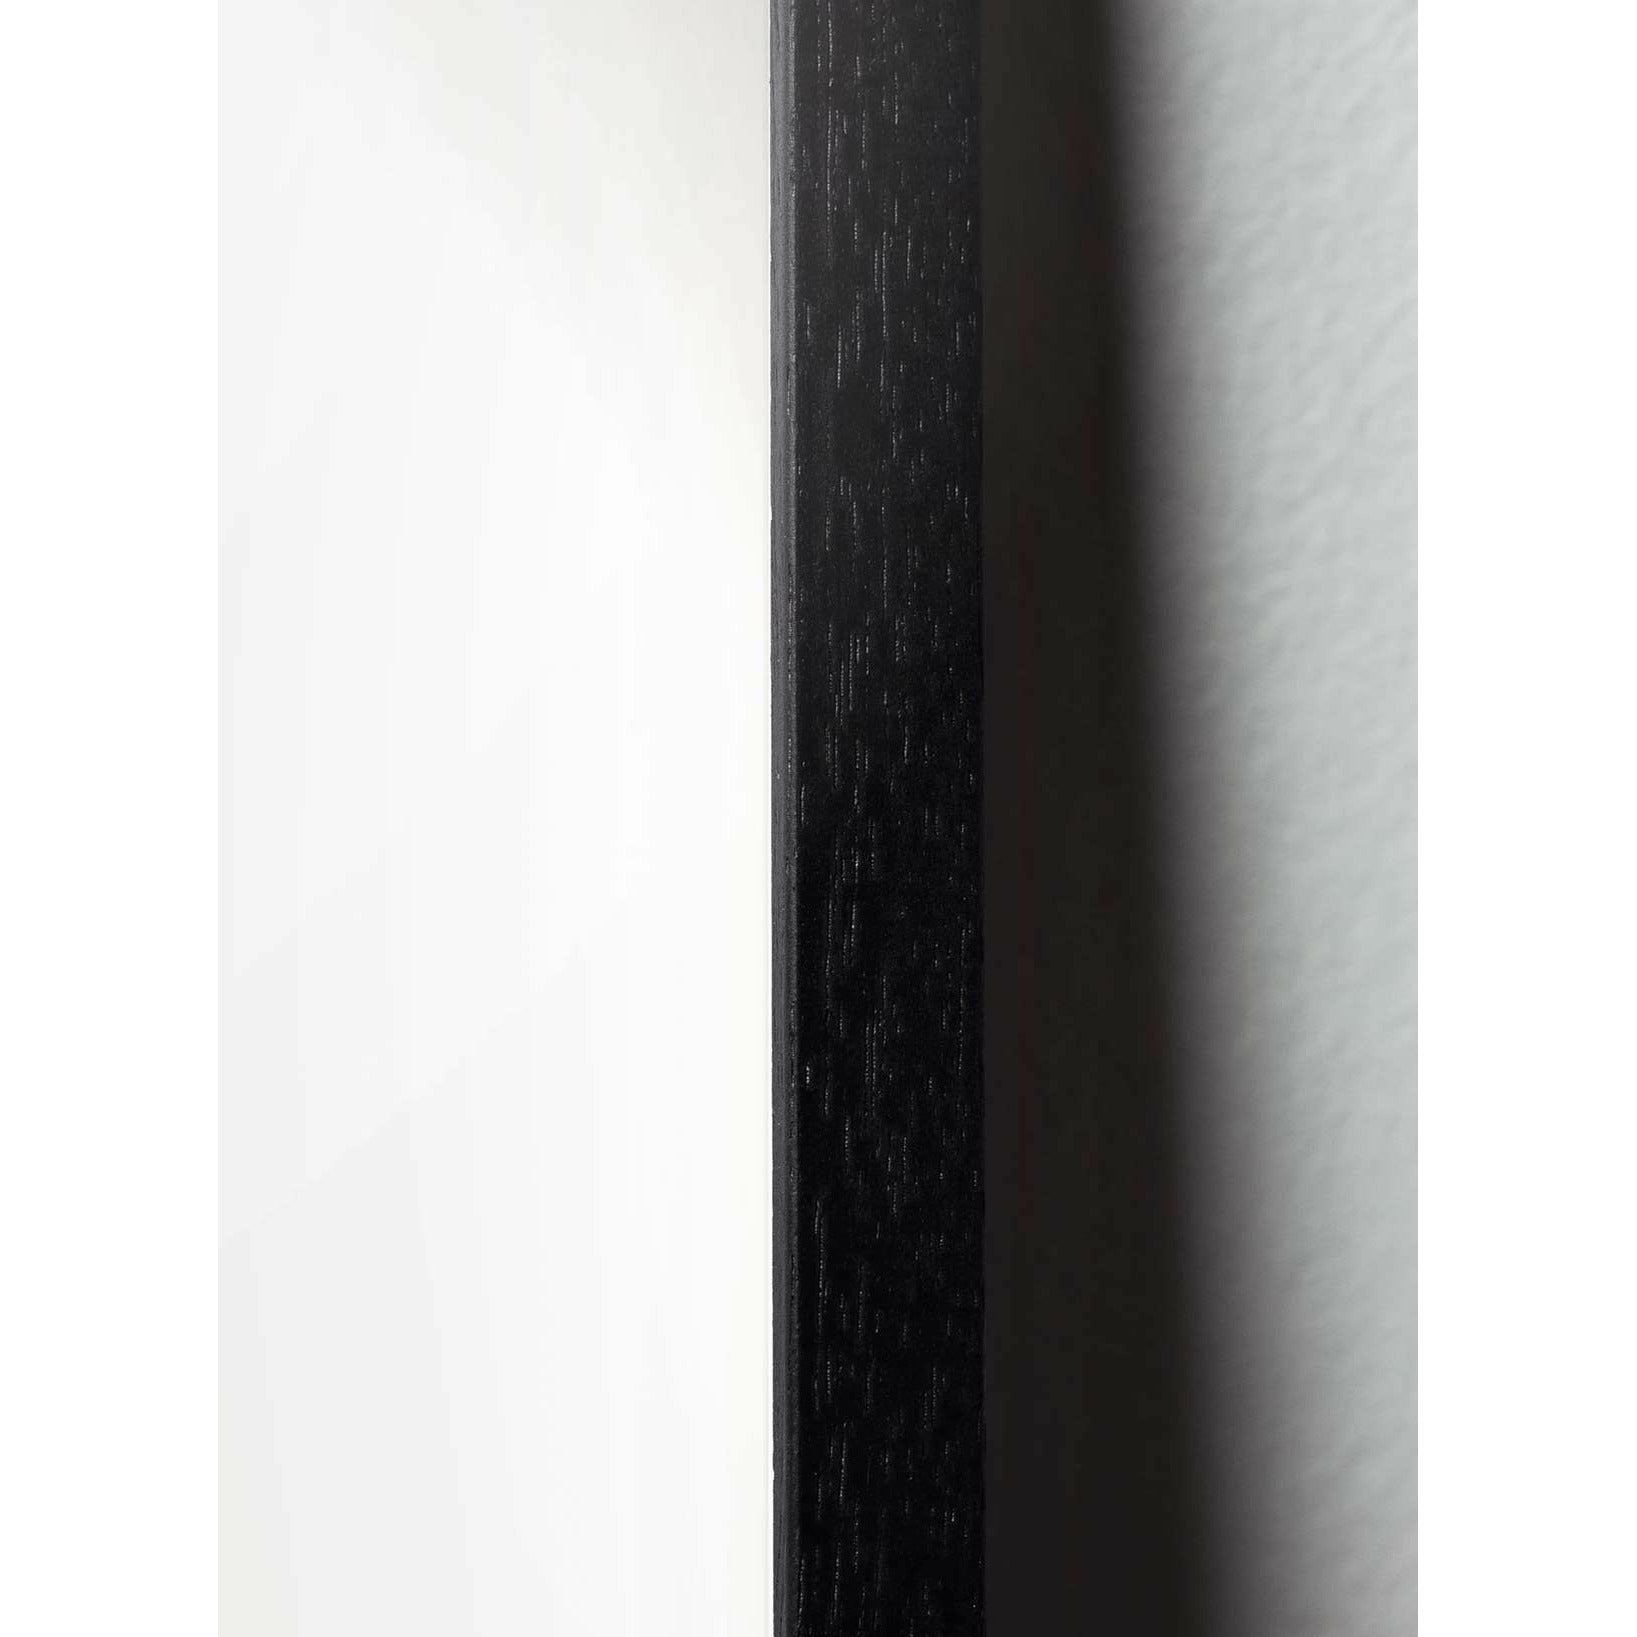 Pomysły plakat jaja, rama wykonana z czarnego lakierowanego drewna 70 x 100 cm, brązowy